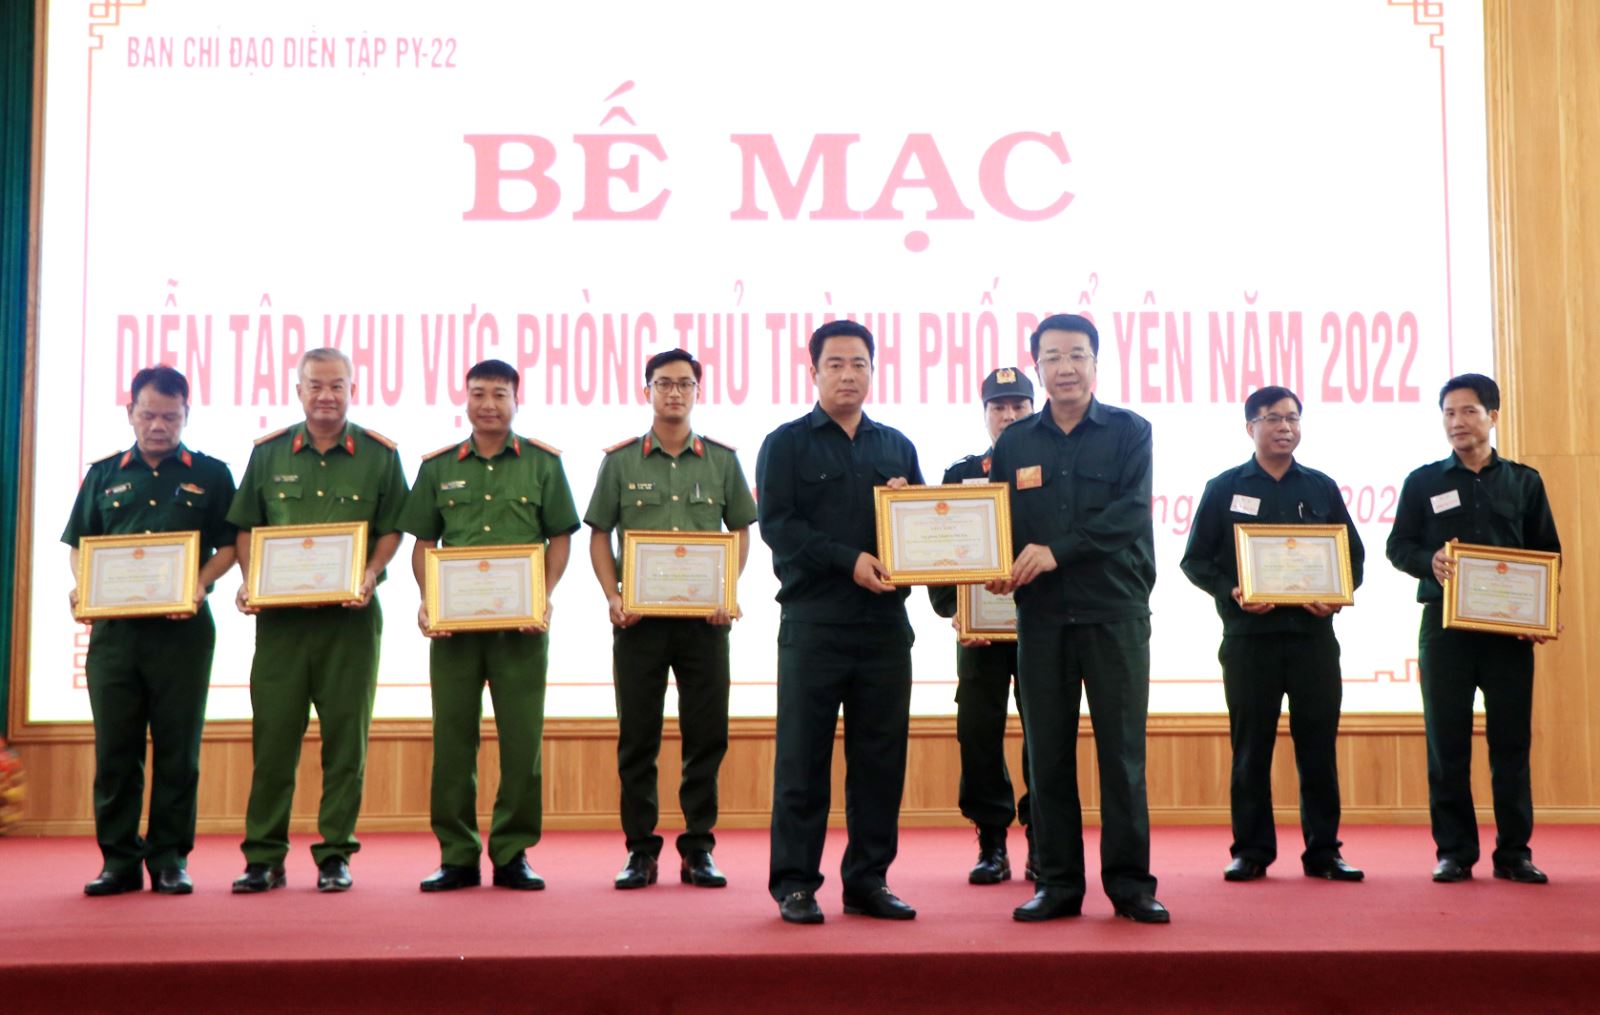  Đồng chí Nguyễn Thanh Bình, Phó Chủ tịch UBND tỉnh trao thưởng cho các tập thể, cá nhân có thành tích xuất sắc trong đợt diễn tập.